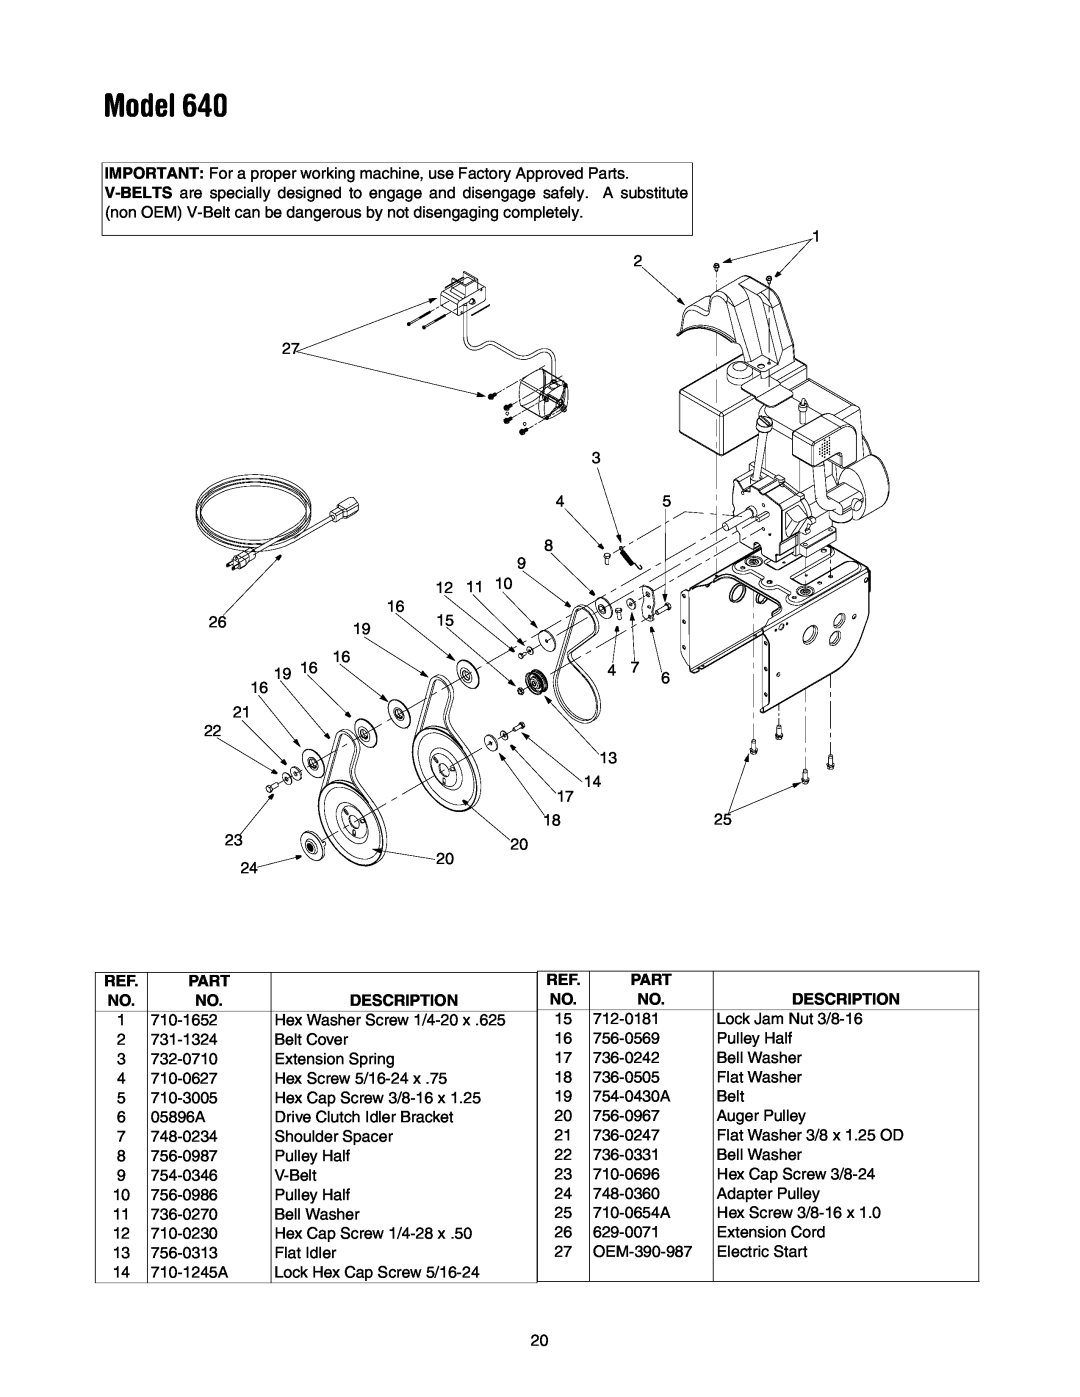 MTD 640 manual Model, Part, Description 